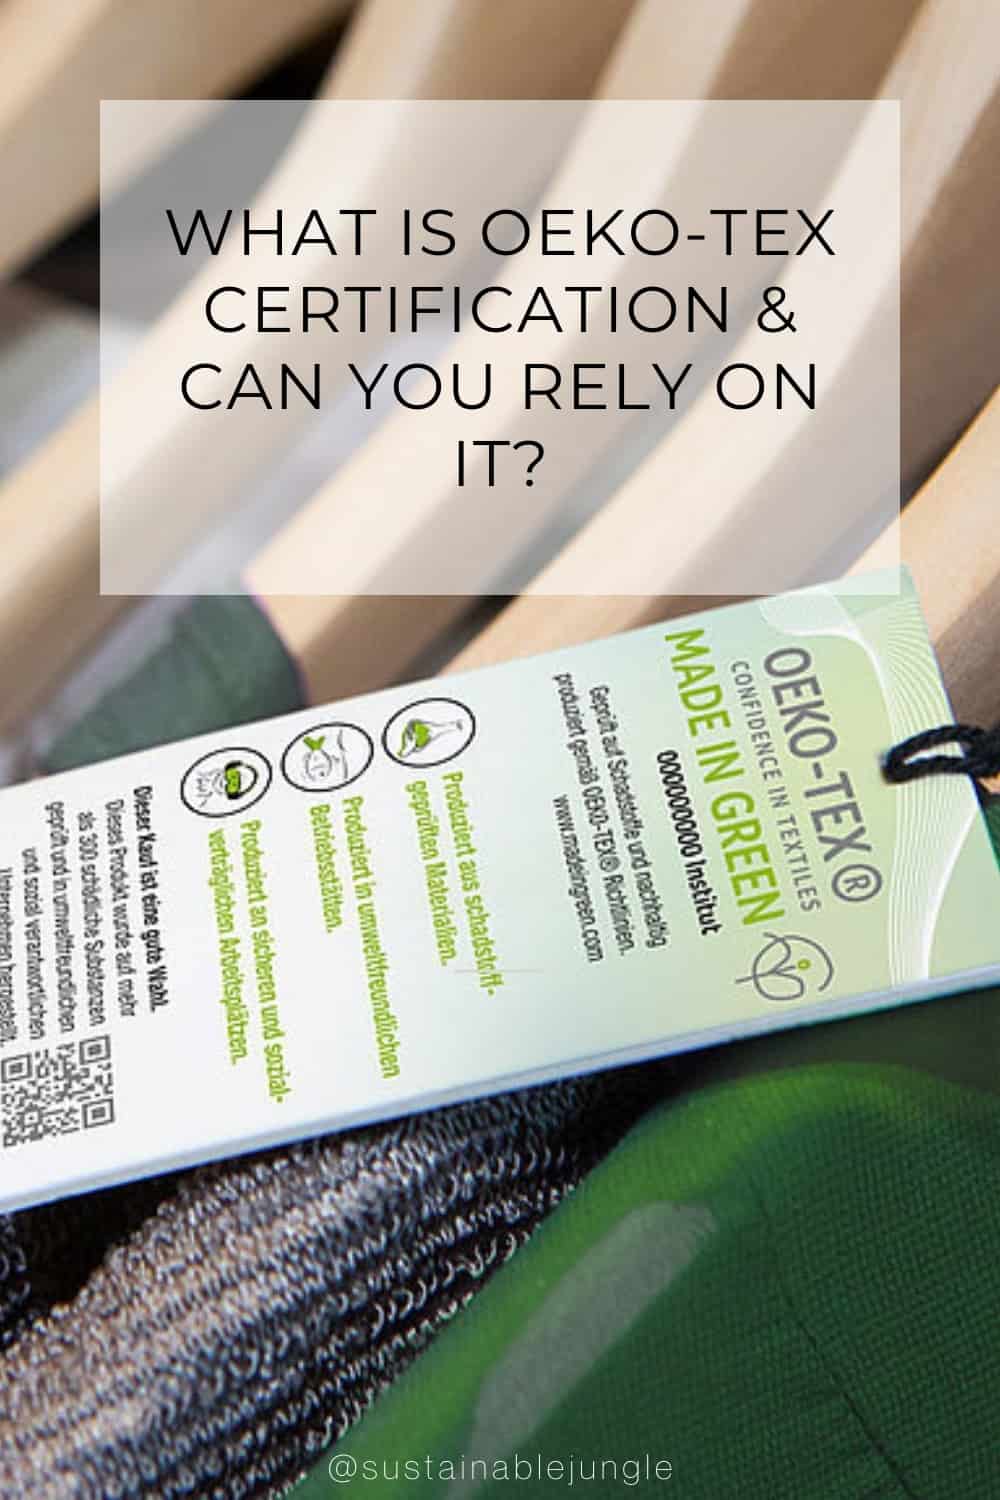 What Is OEKO-TEX Certification & Can You Rely On It? #whatisoekotex #whatisoekotexcertified? #whatisoekotexcertification #canyourelyonoekotex? #oekotexvsgots #isoekotexsustainable #isoekotextrustworthy? #sustainablejungle Image by OEKO-TEX